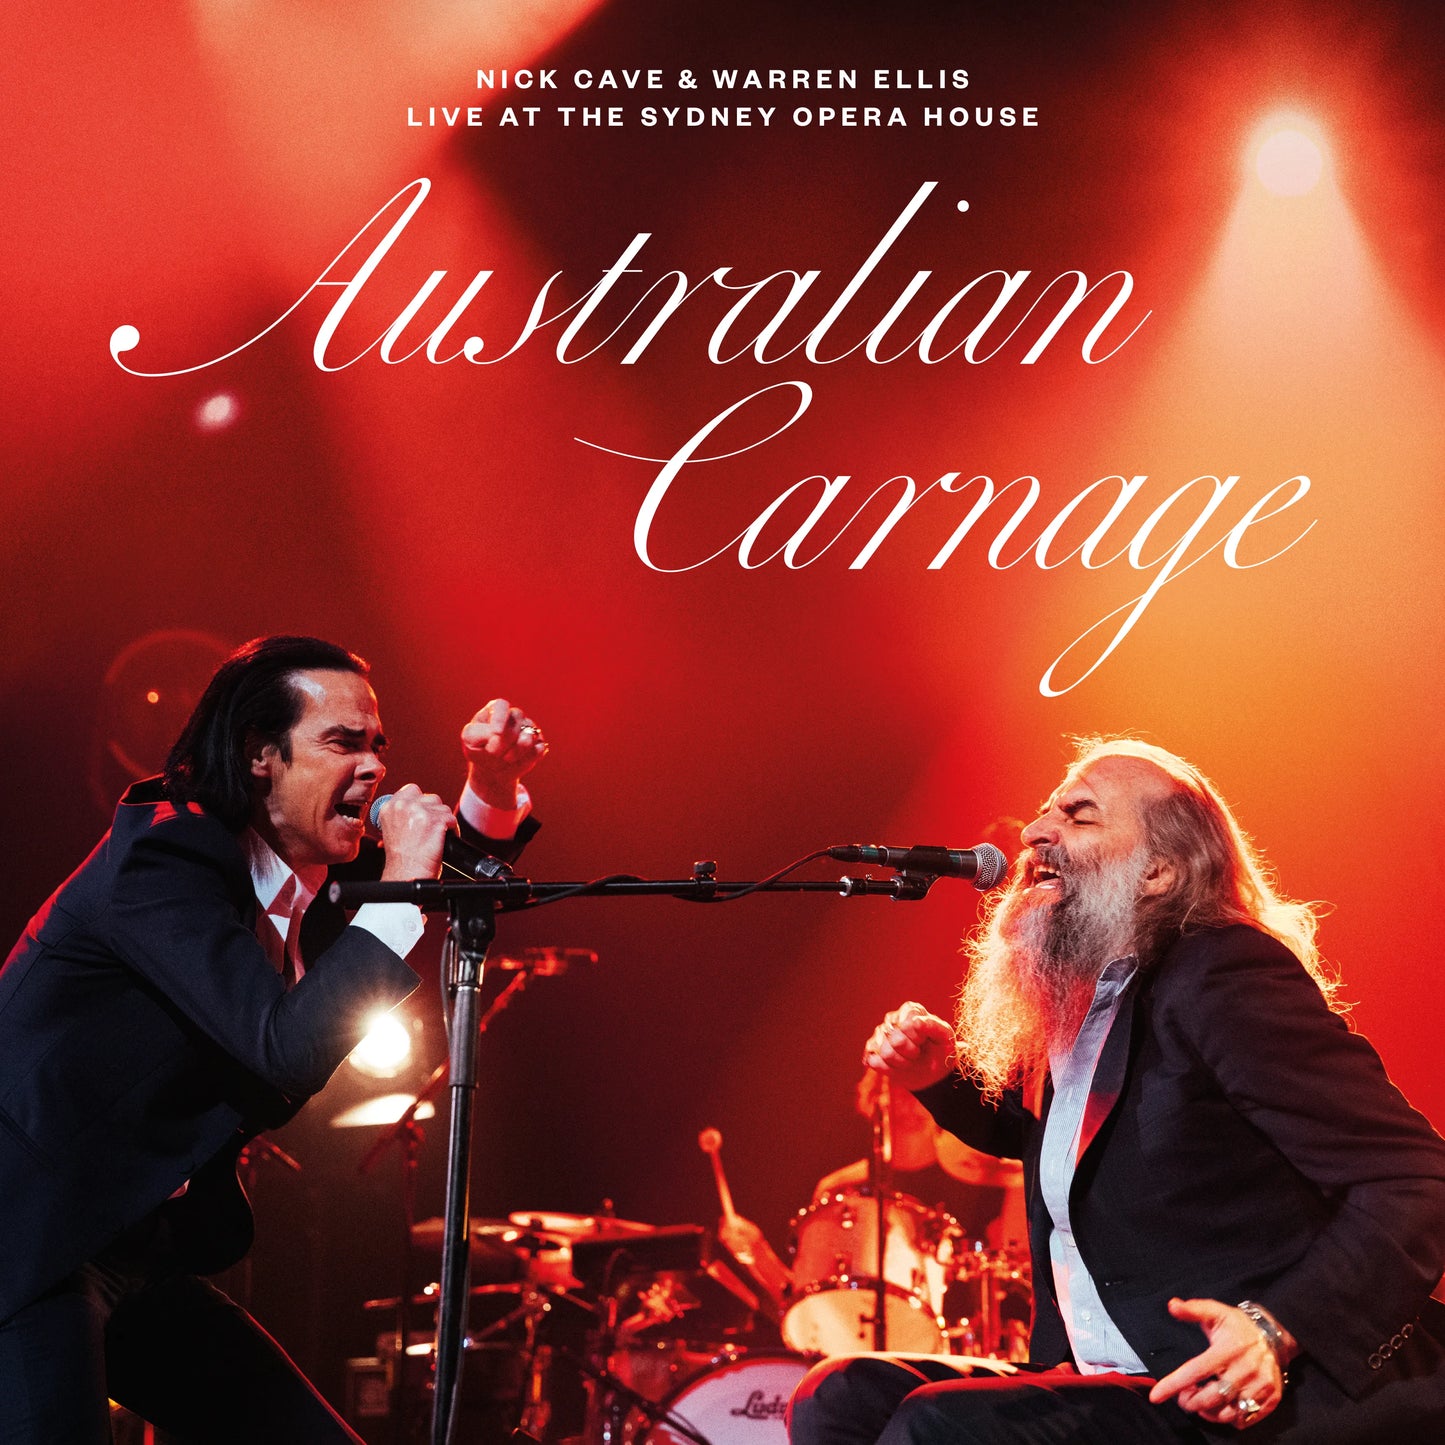 Nick Cave & Warren Ellis - Australian Carnage | Buy the Vinyl LP from Flying Nun Records